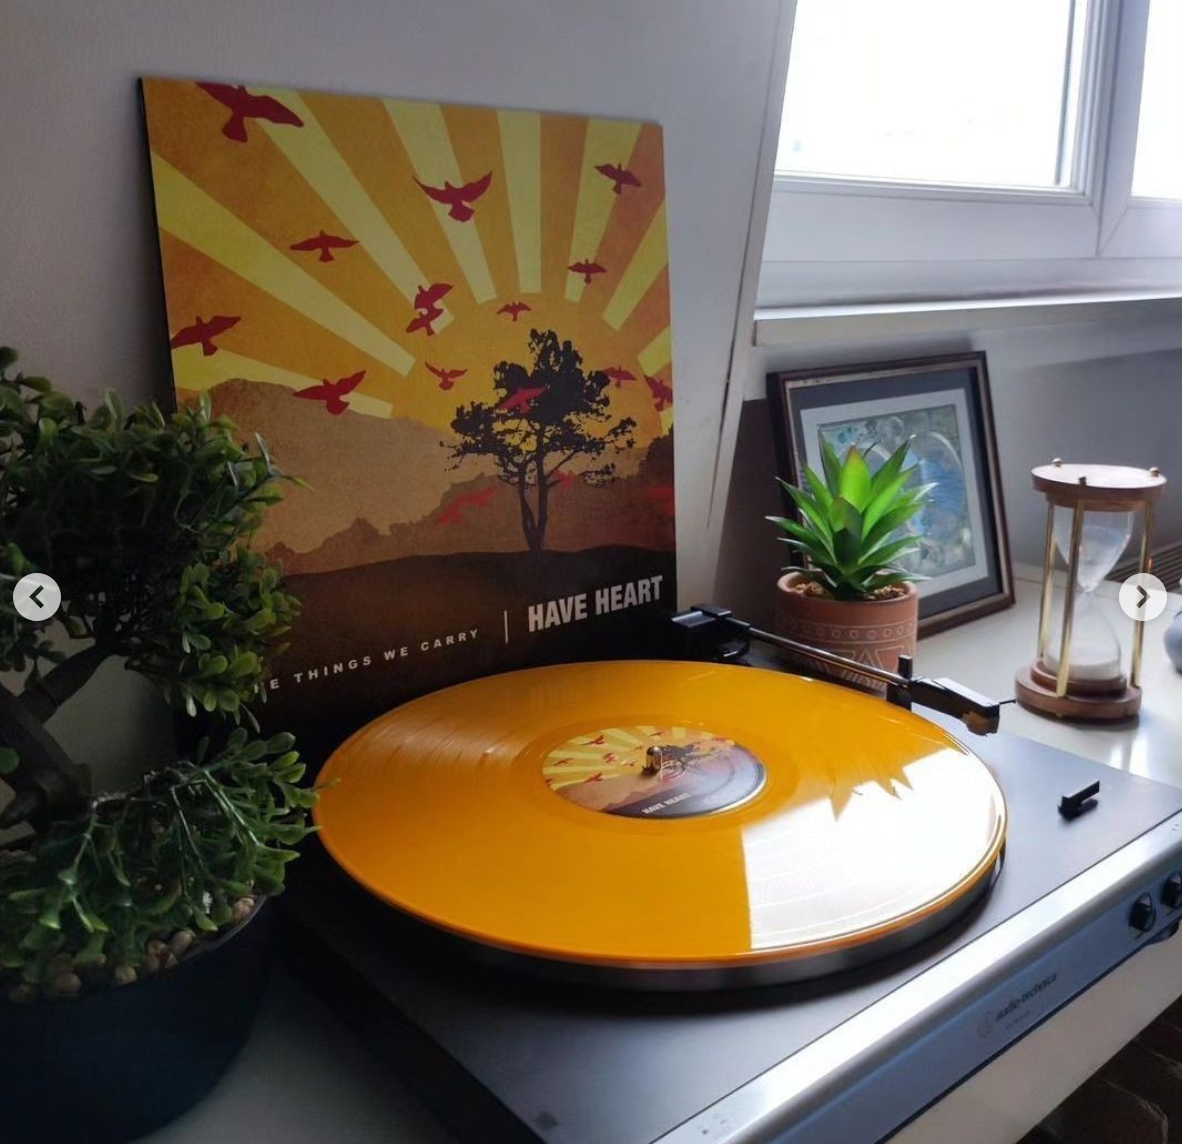 Audio-Technica Turntable with Yellow Vinyl